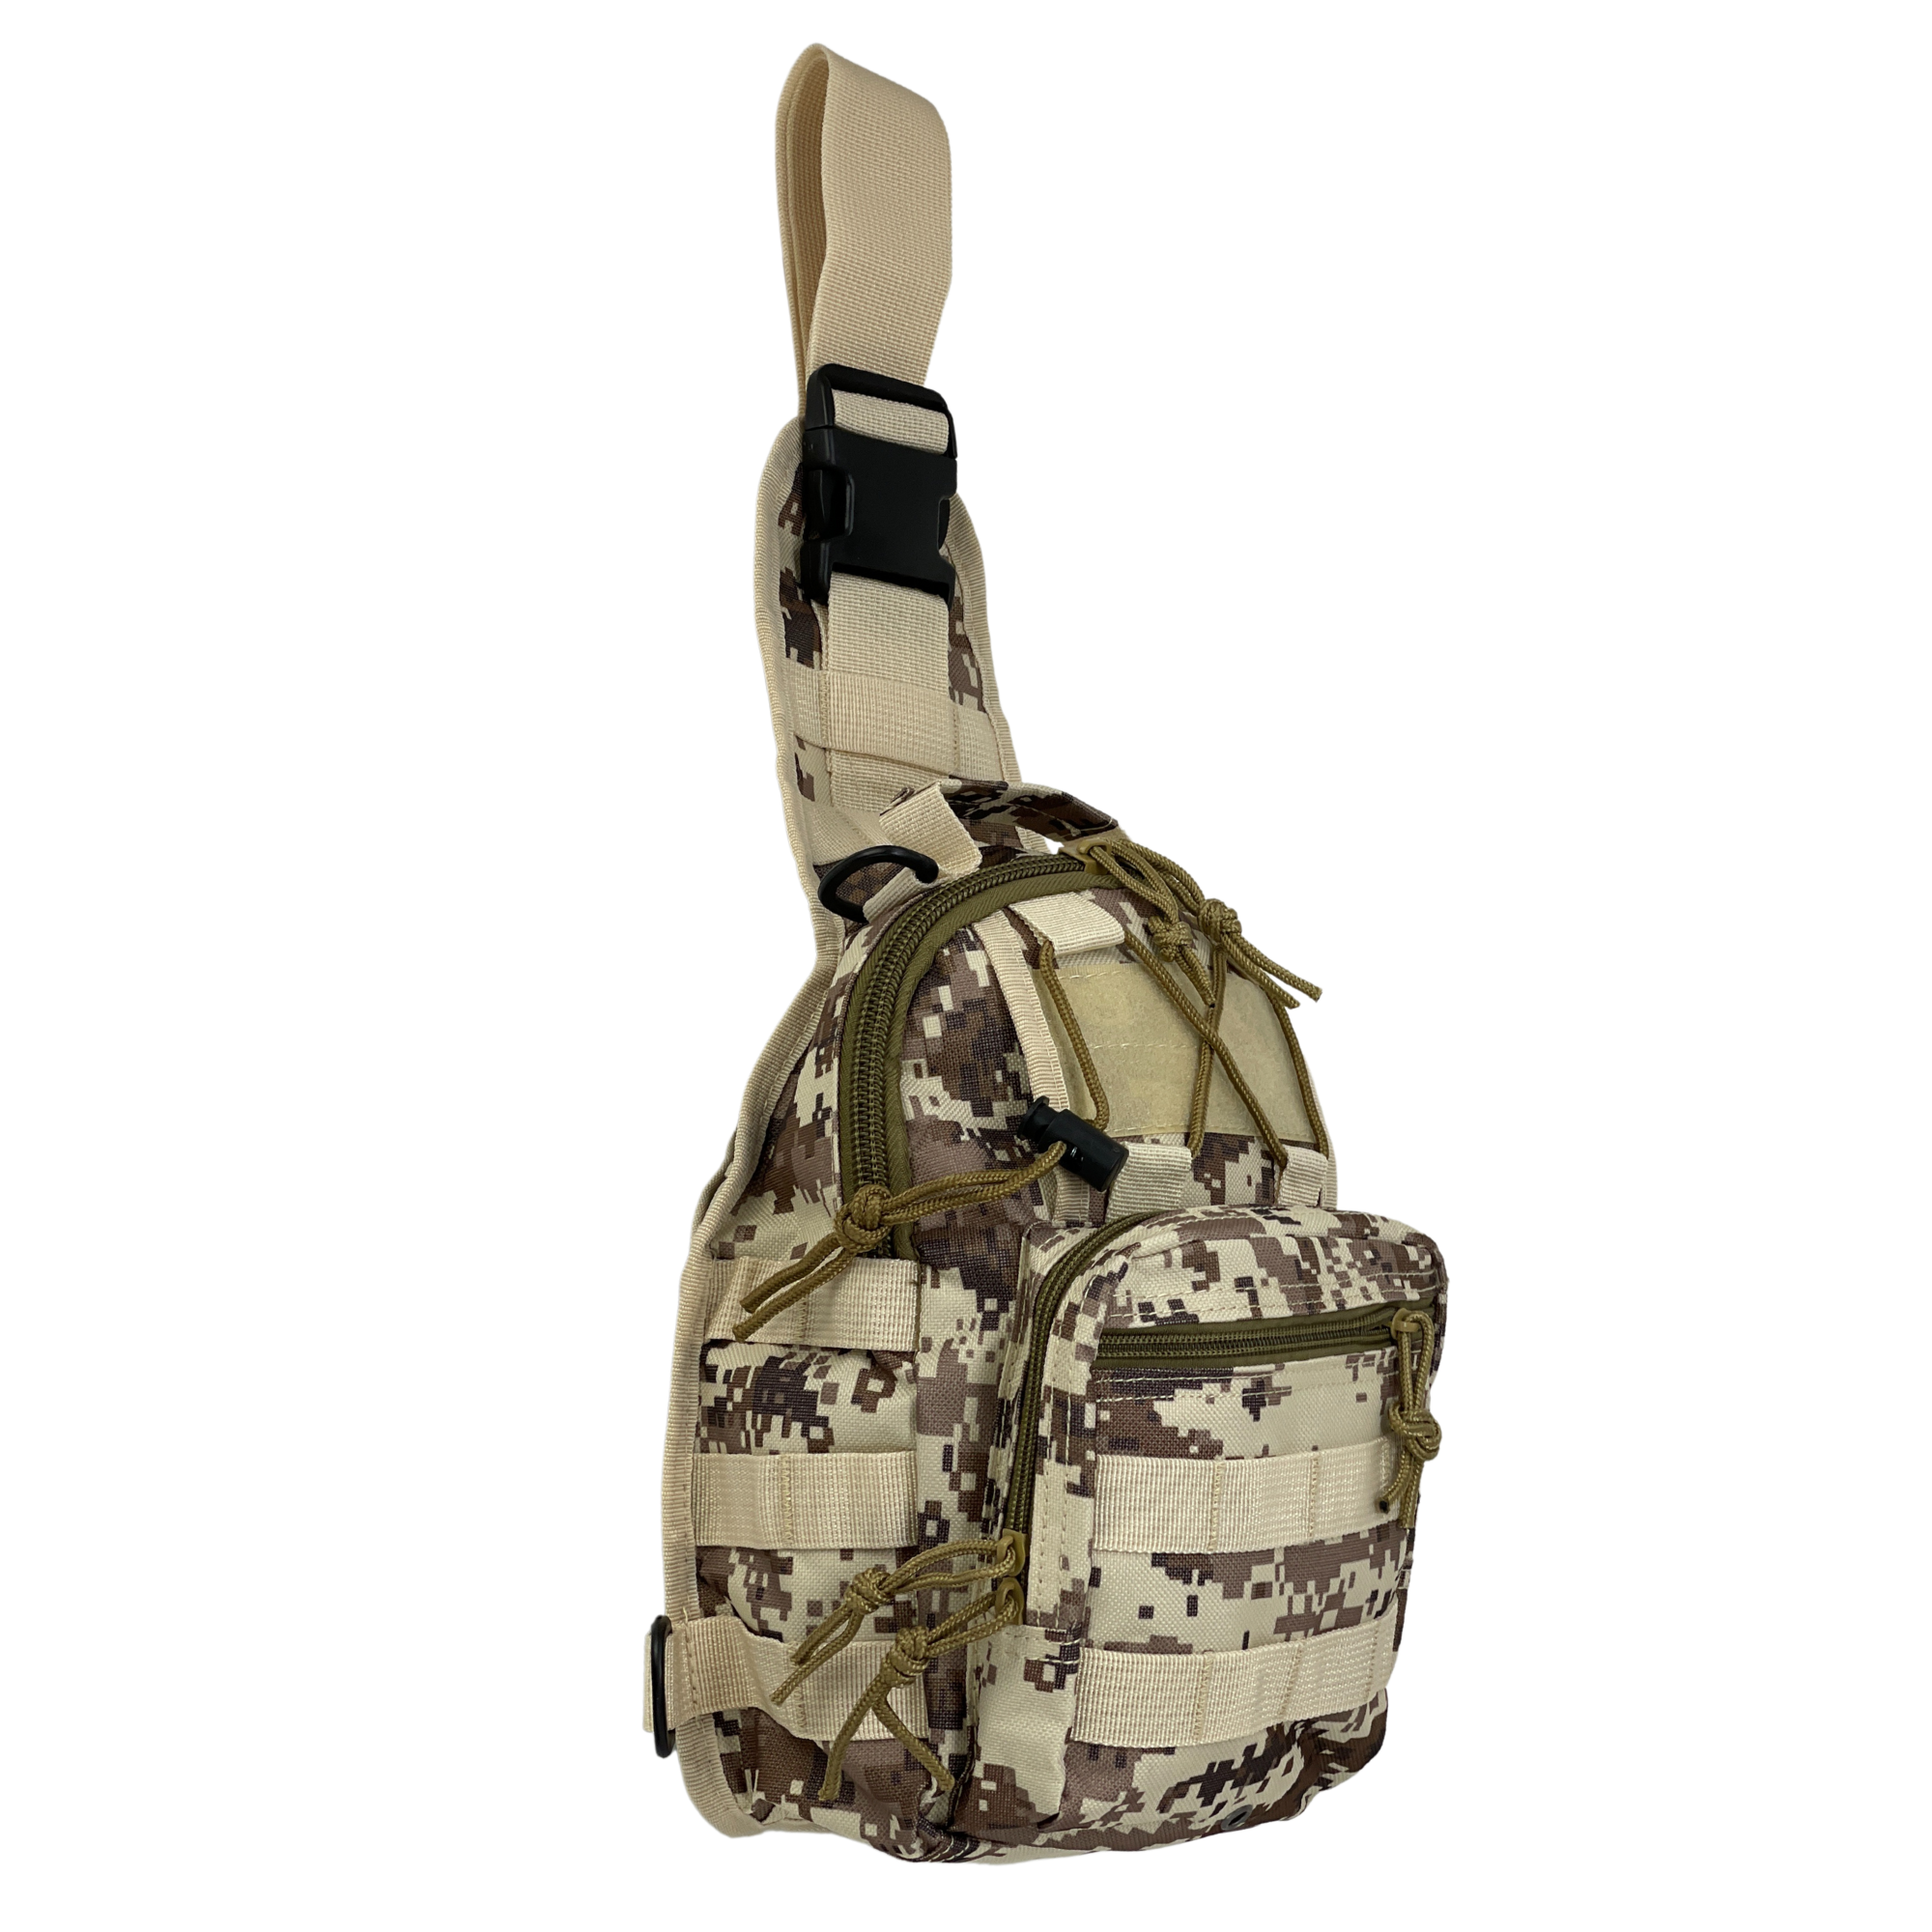 Jupiter Gear Tactical Military Sling Backpack Shoulder Bag Molle Outdoor Daypack Backpack with Adjustable Strap